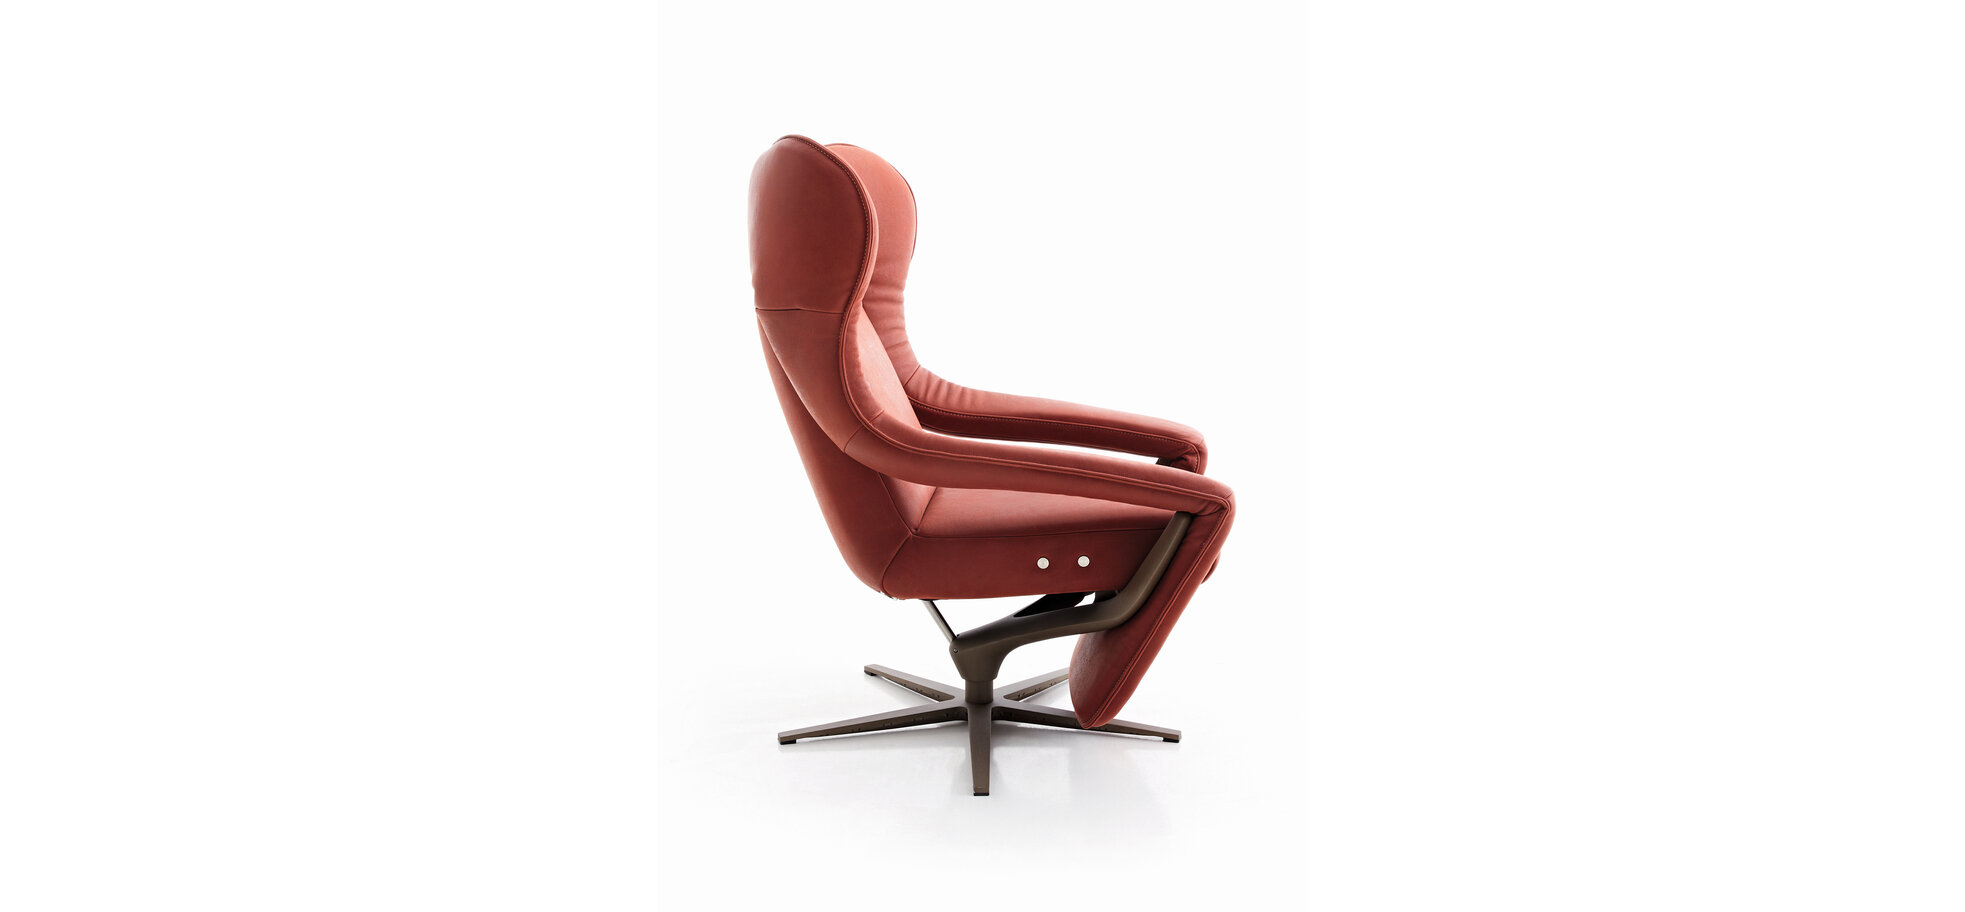 Sessel – Relaxfunktion motorisch, Leder Rot